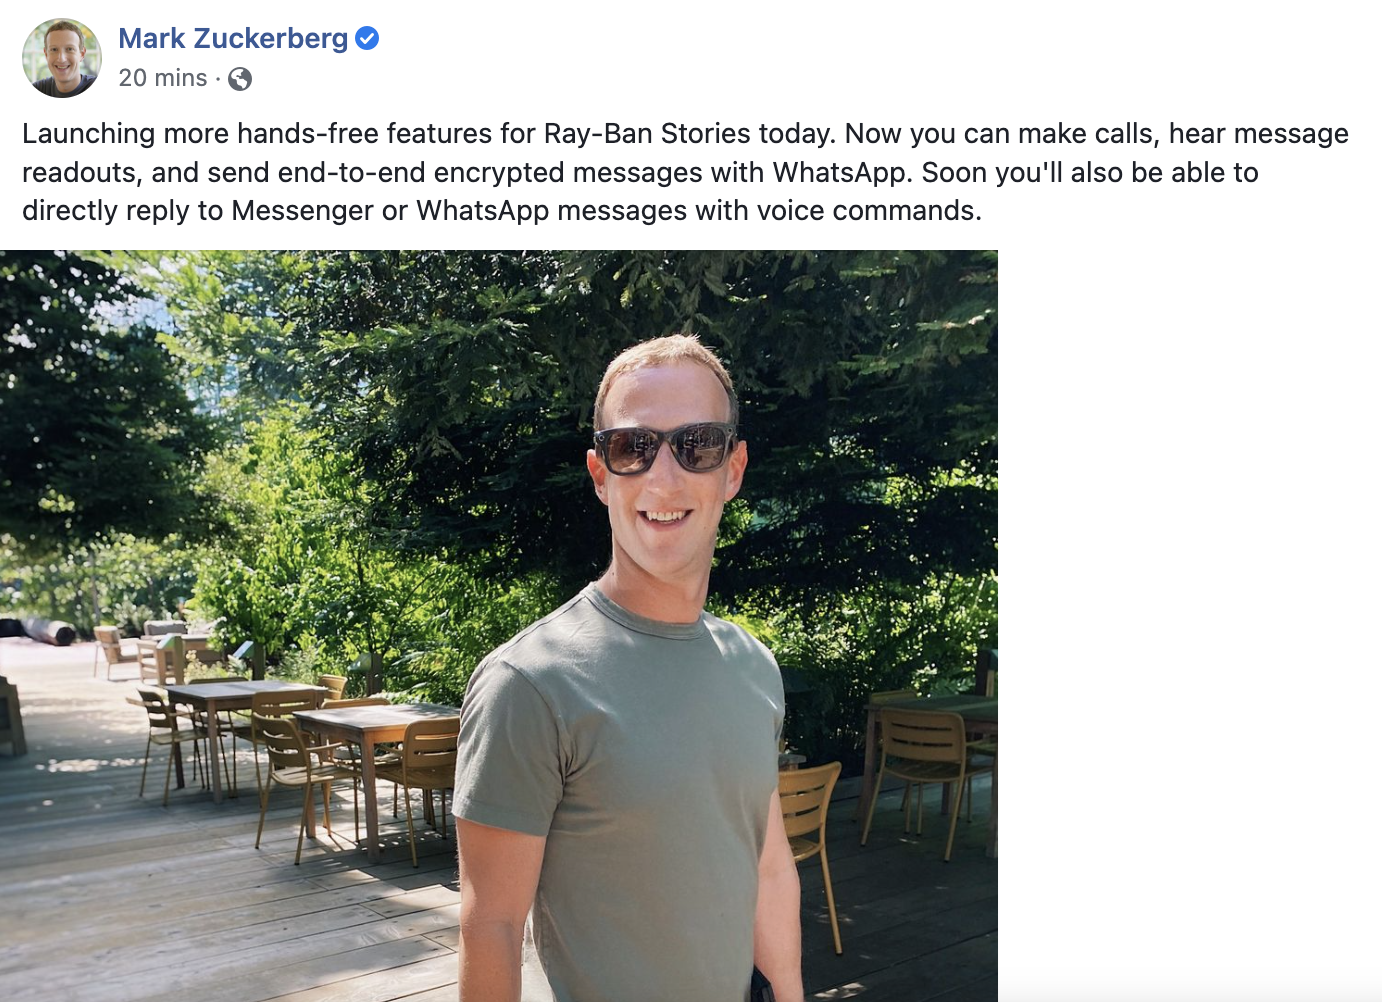 Mark Zuckerberg Facebook post announcing Ray-Ban update